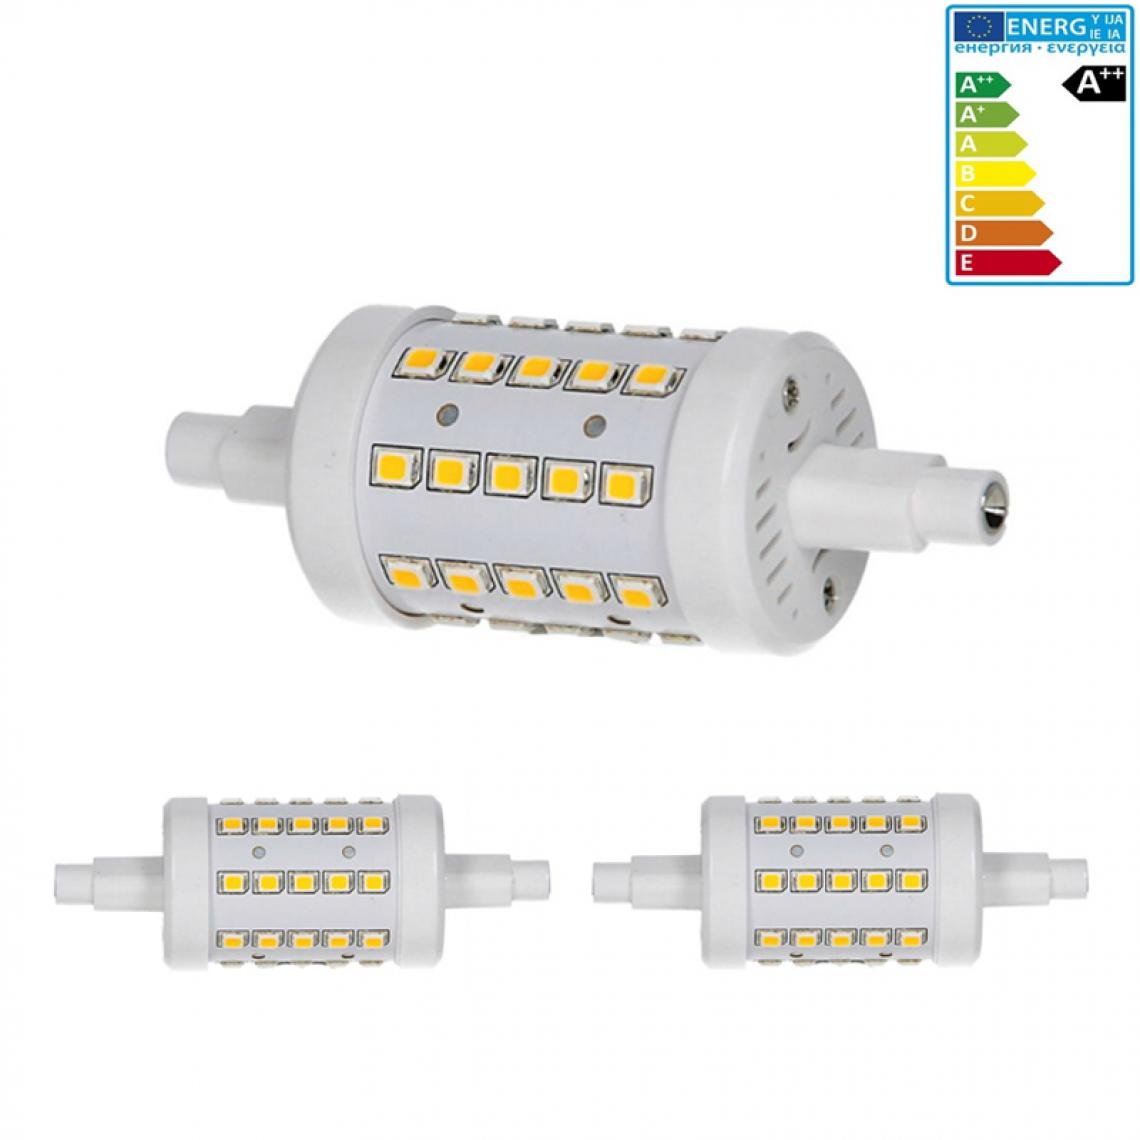 Ecd Germany - ECD Germany 2 x R7S Ampoule LED 7W 78mm 480 lumens angle de faisceau de mesure AC 220-240 360 remplace ampoule halogène 45W réglable blanc neutre - Tubes et néons